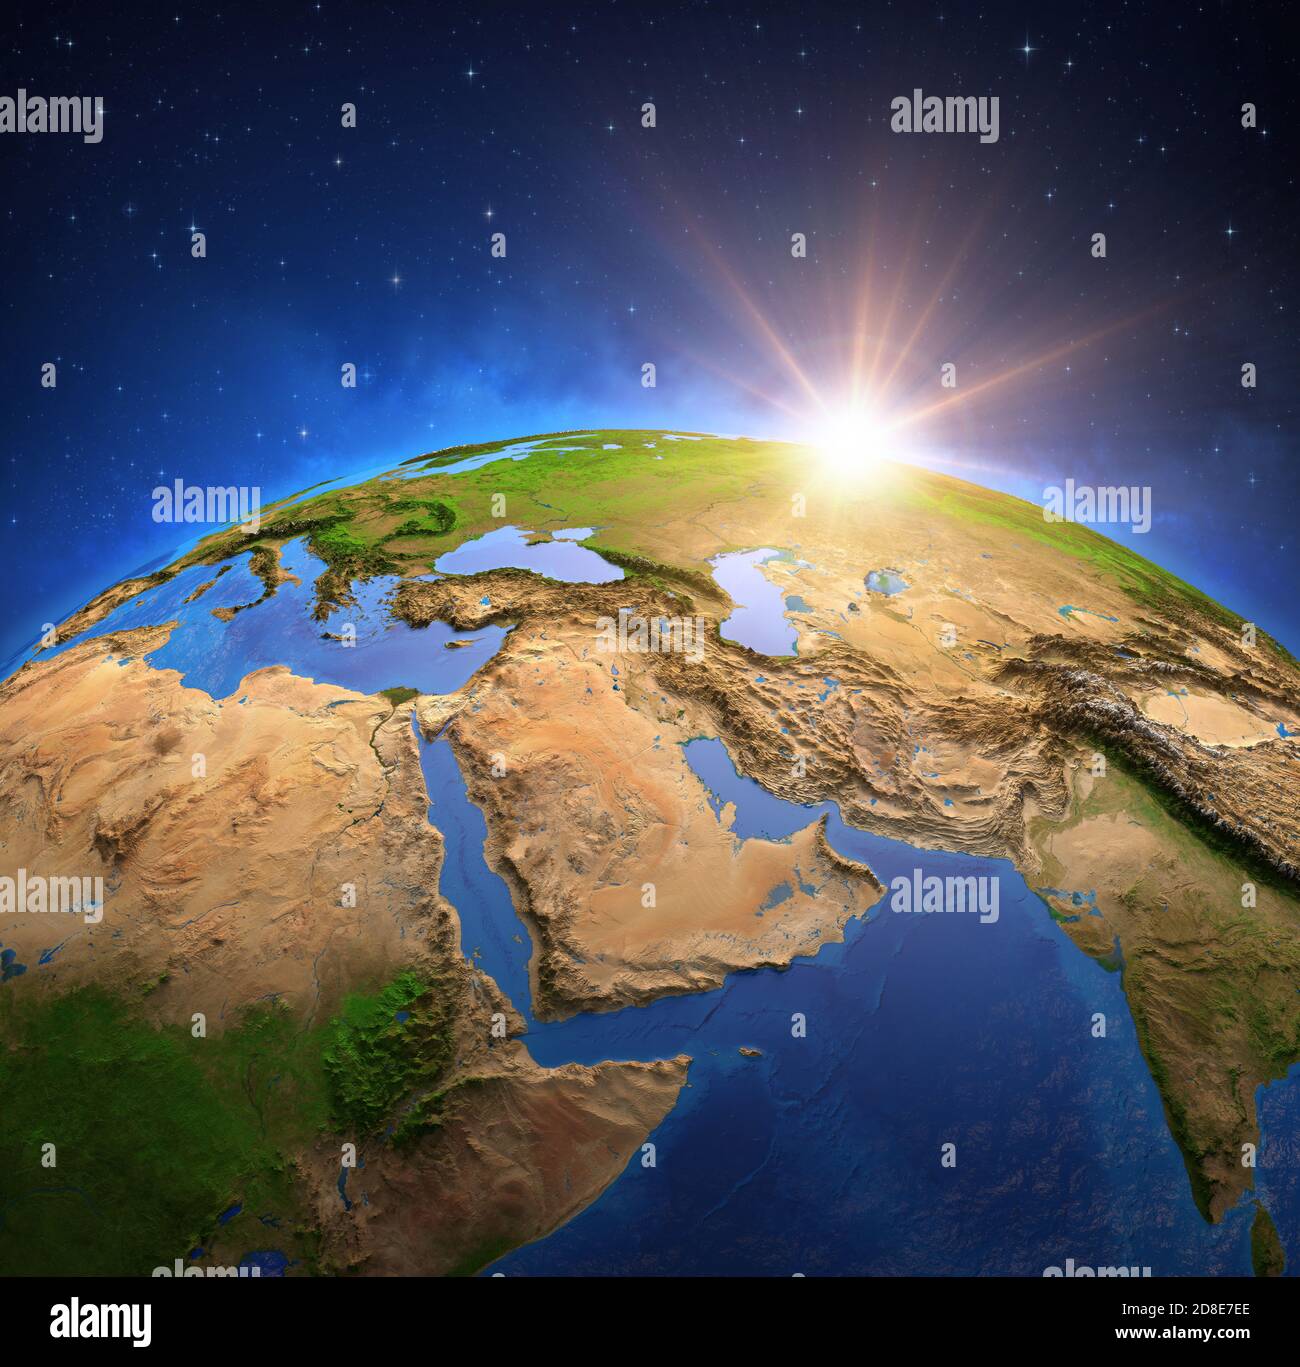 Superficie del Planeta Tierra vista desde un satélite, centrado en Oriente Medio, sol que se eleva en el horizonte. Mapa del Golfo Pérsico. Elementos proporcionados por la NASA Foto de stock